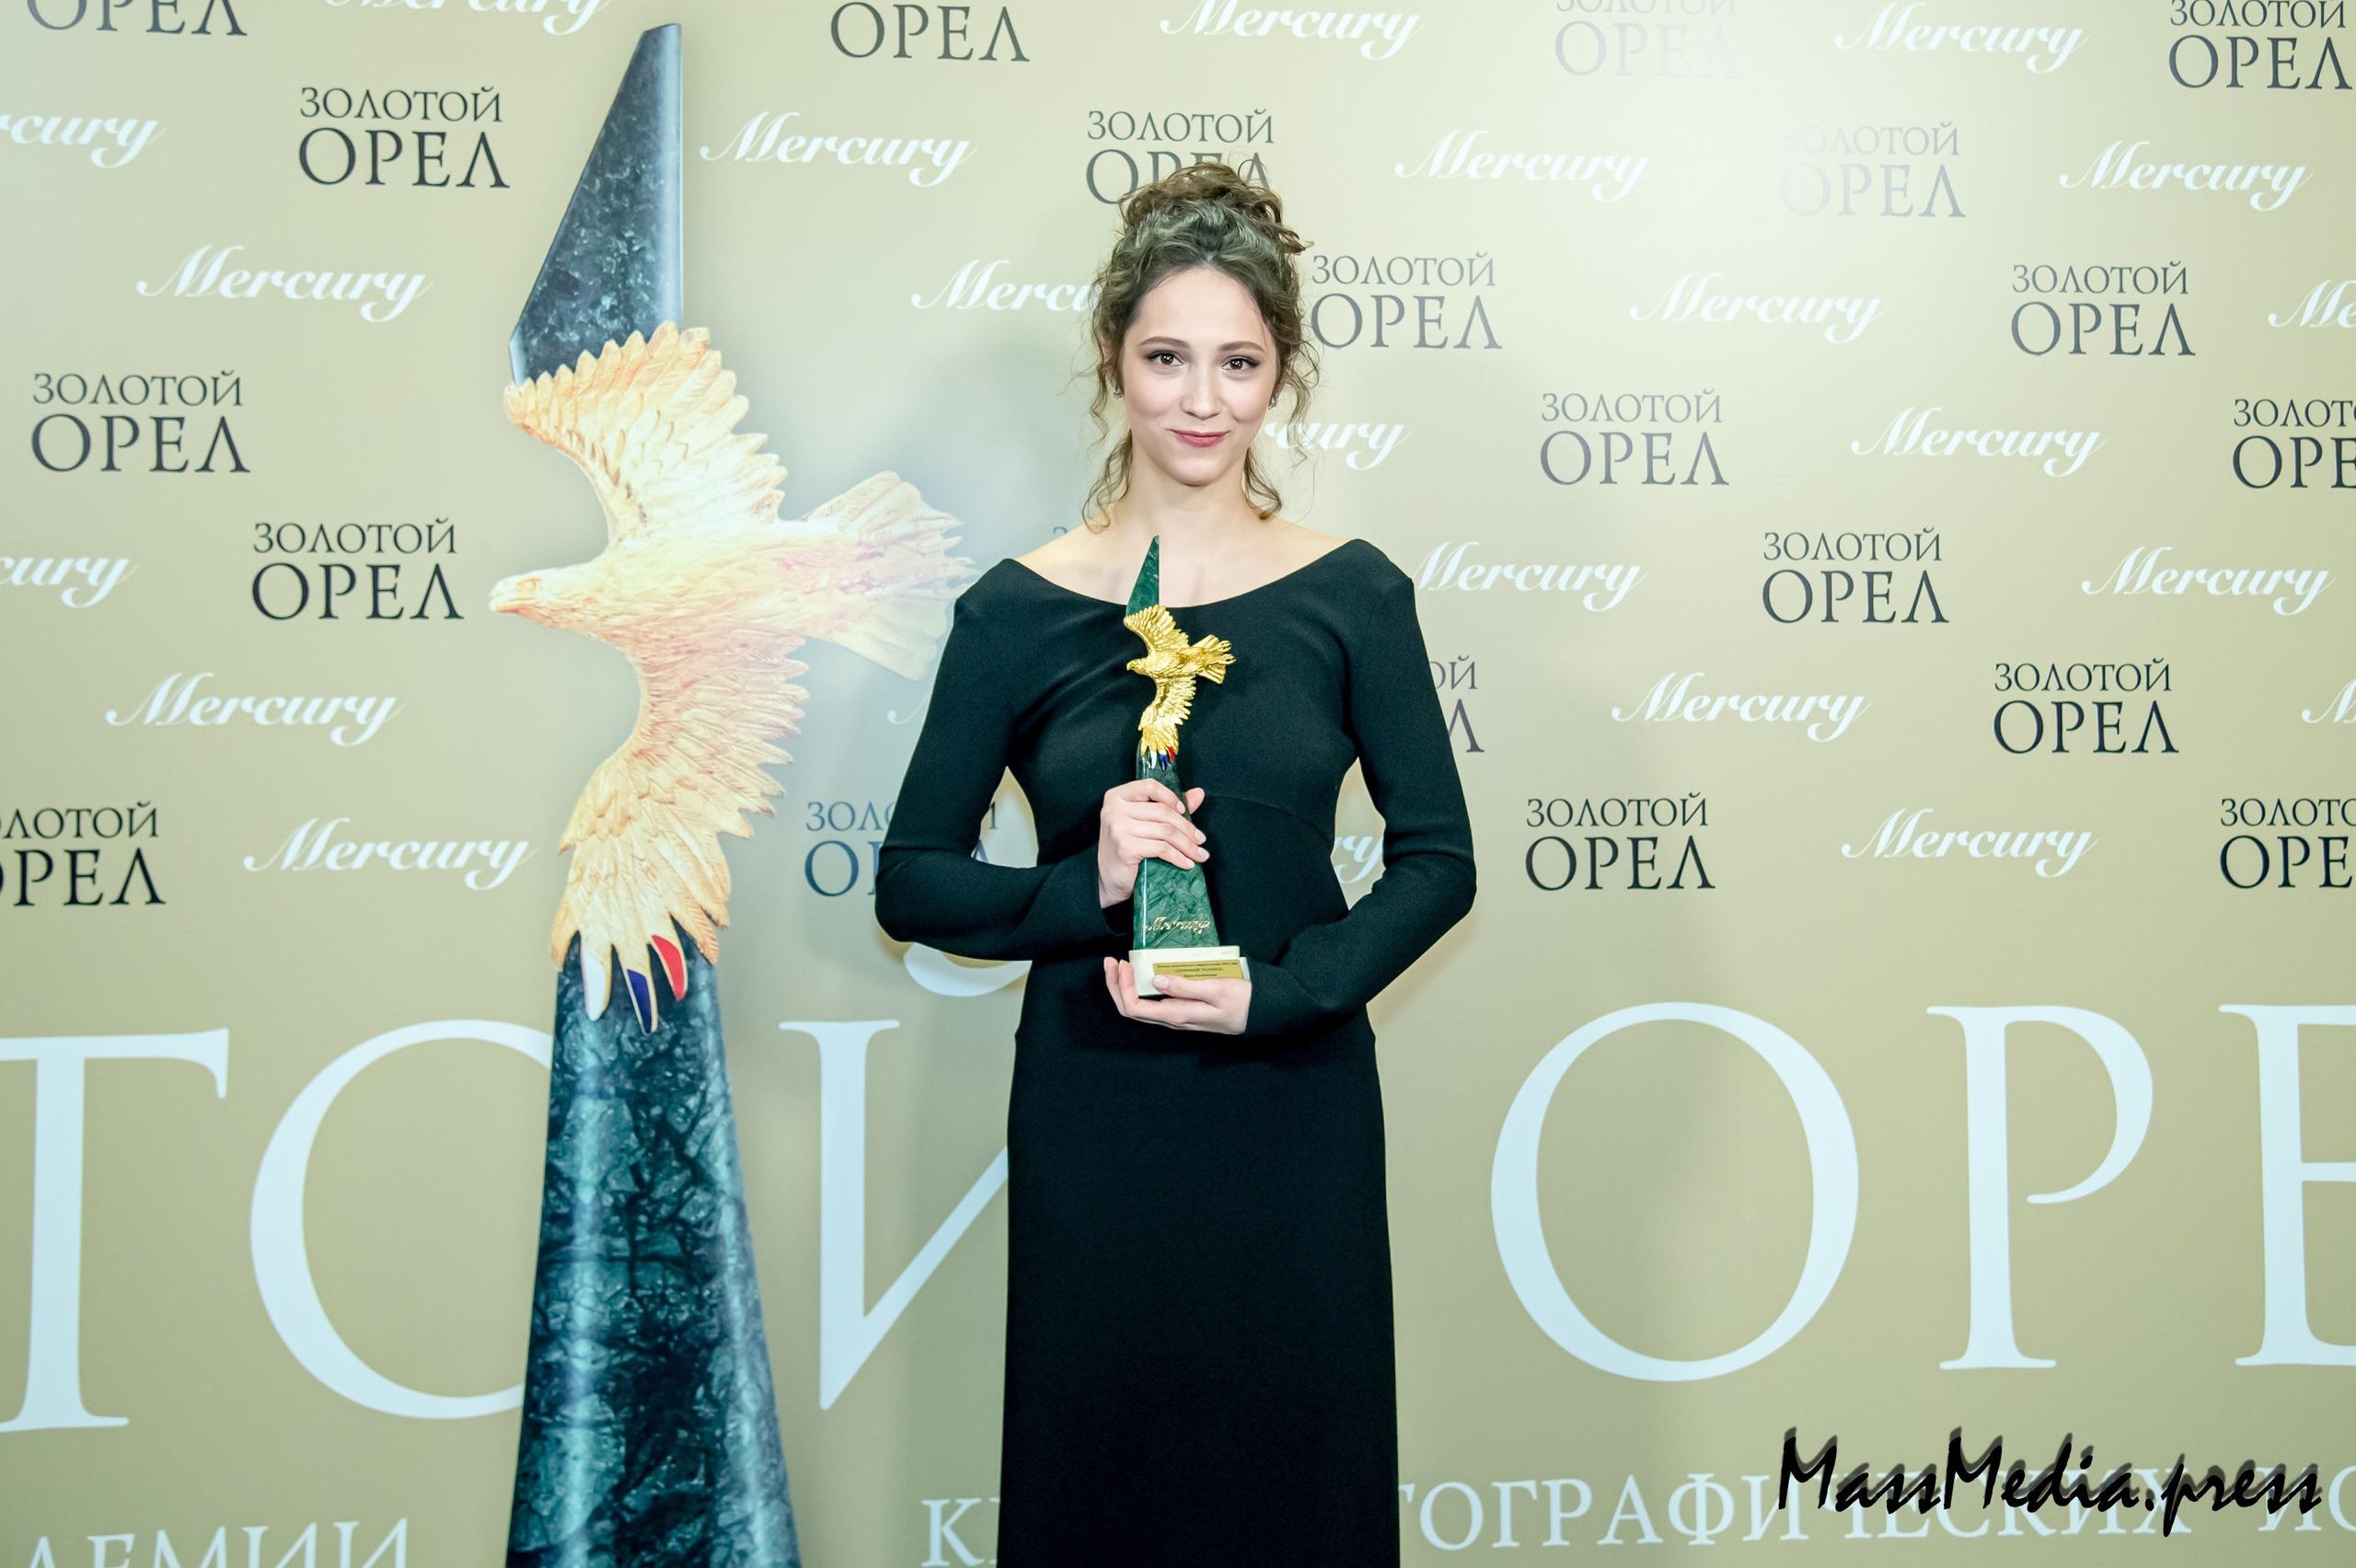 Объявлены лауреаты XXI Национальной кинопремии “Золотой орел”